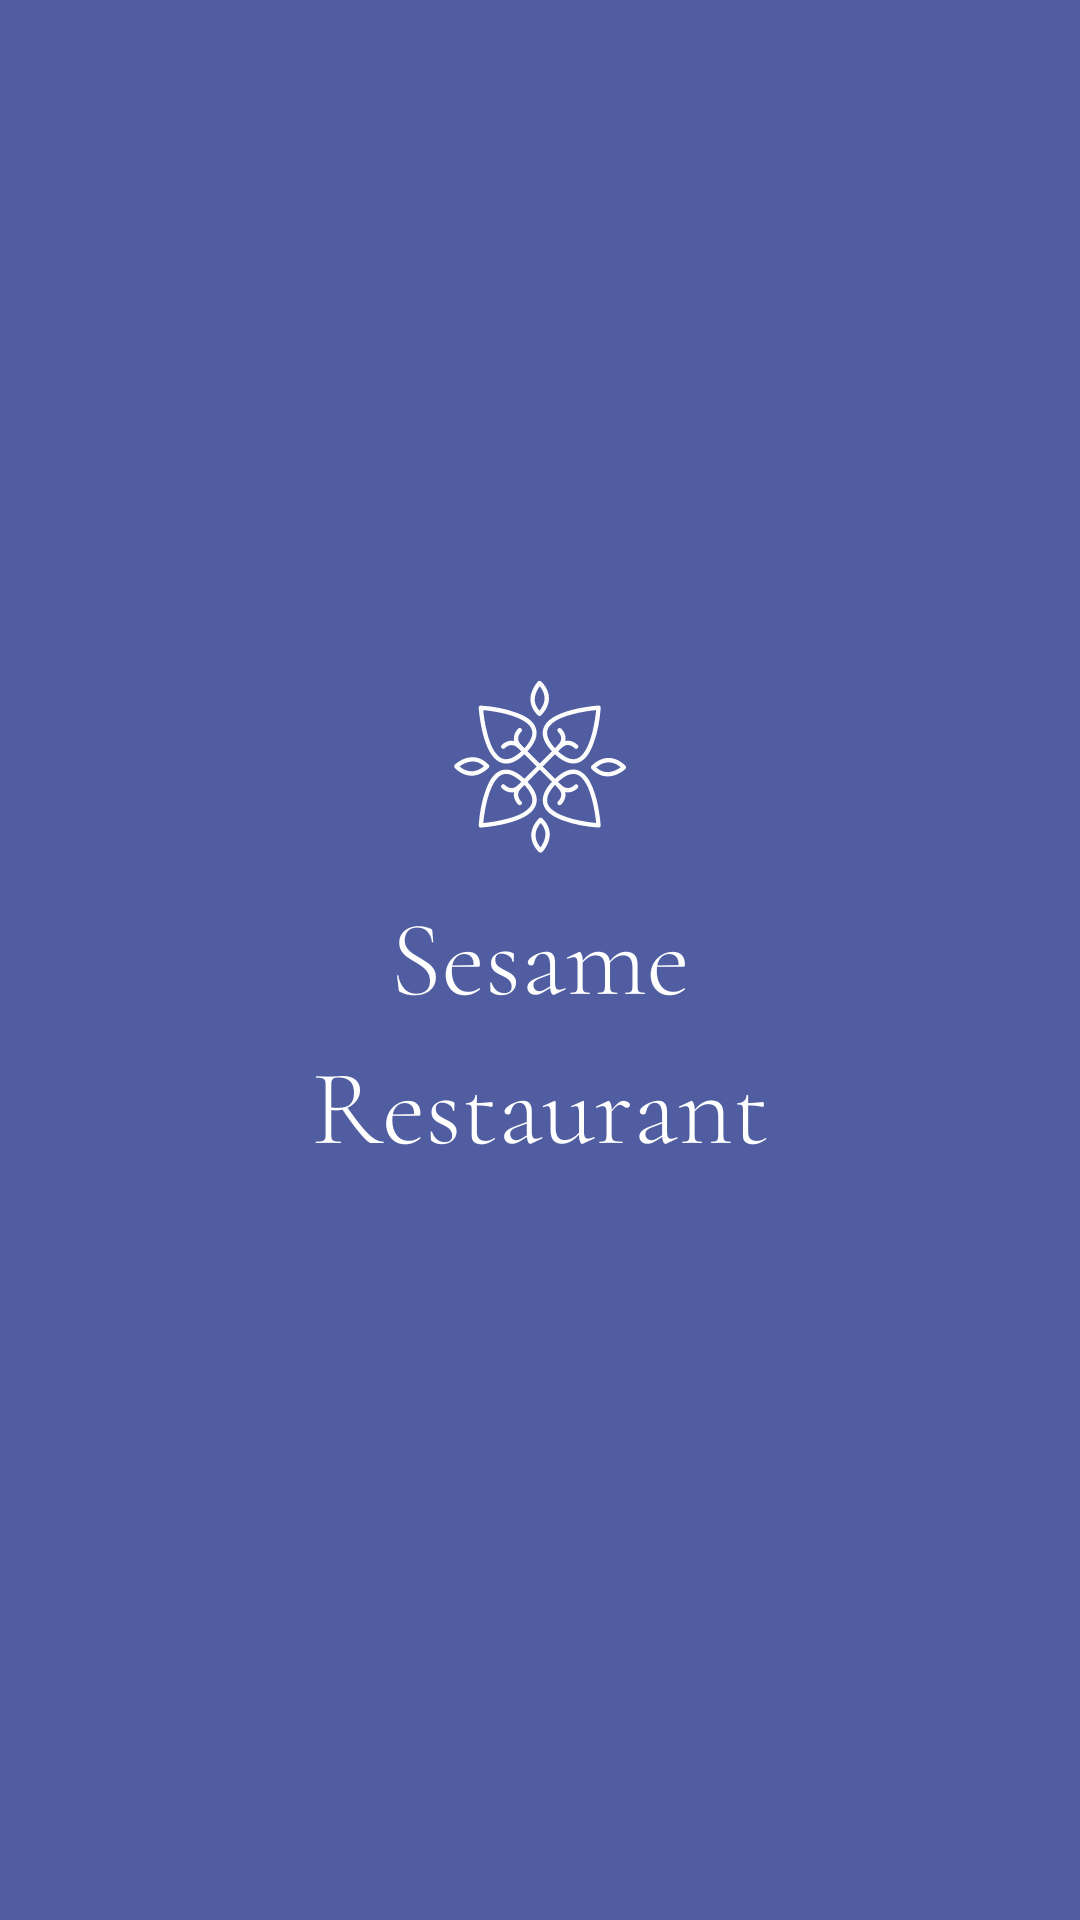 Sesame restaurant